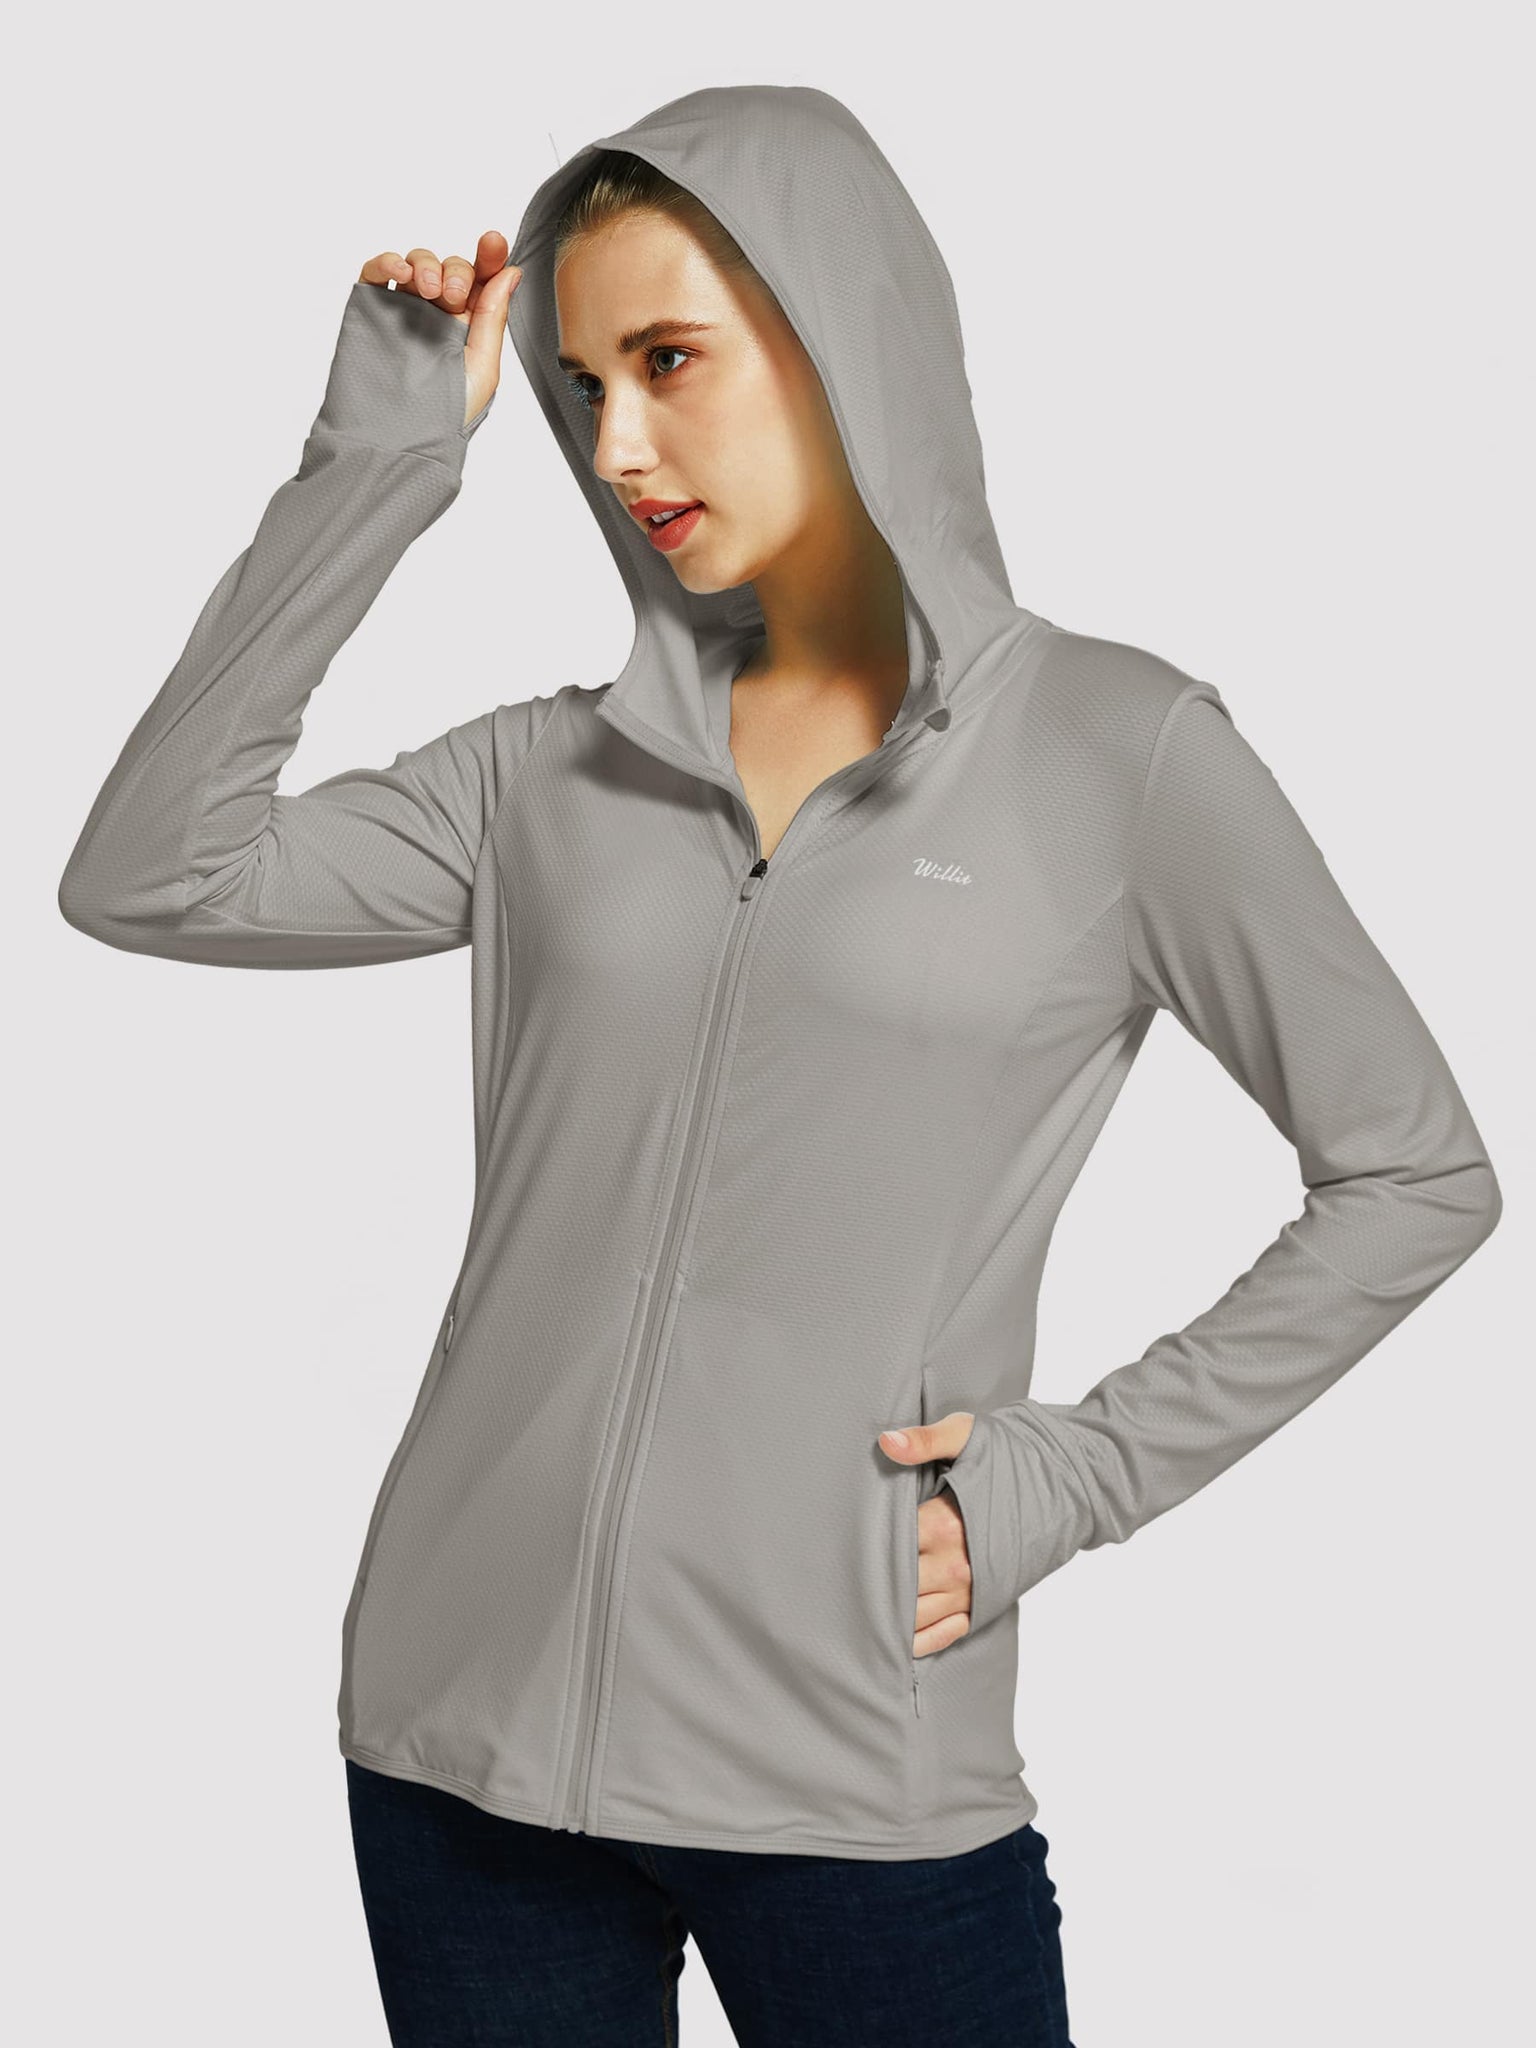 Willit Women's Outdoor Sun Protection Jacket Full Zip_DeepGray_model1